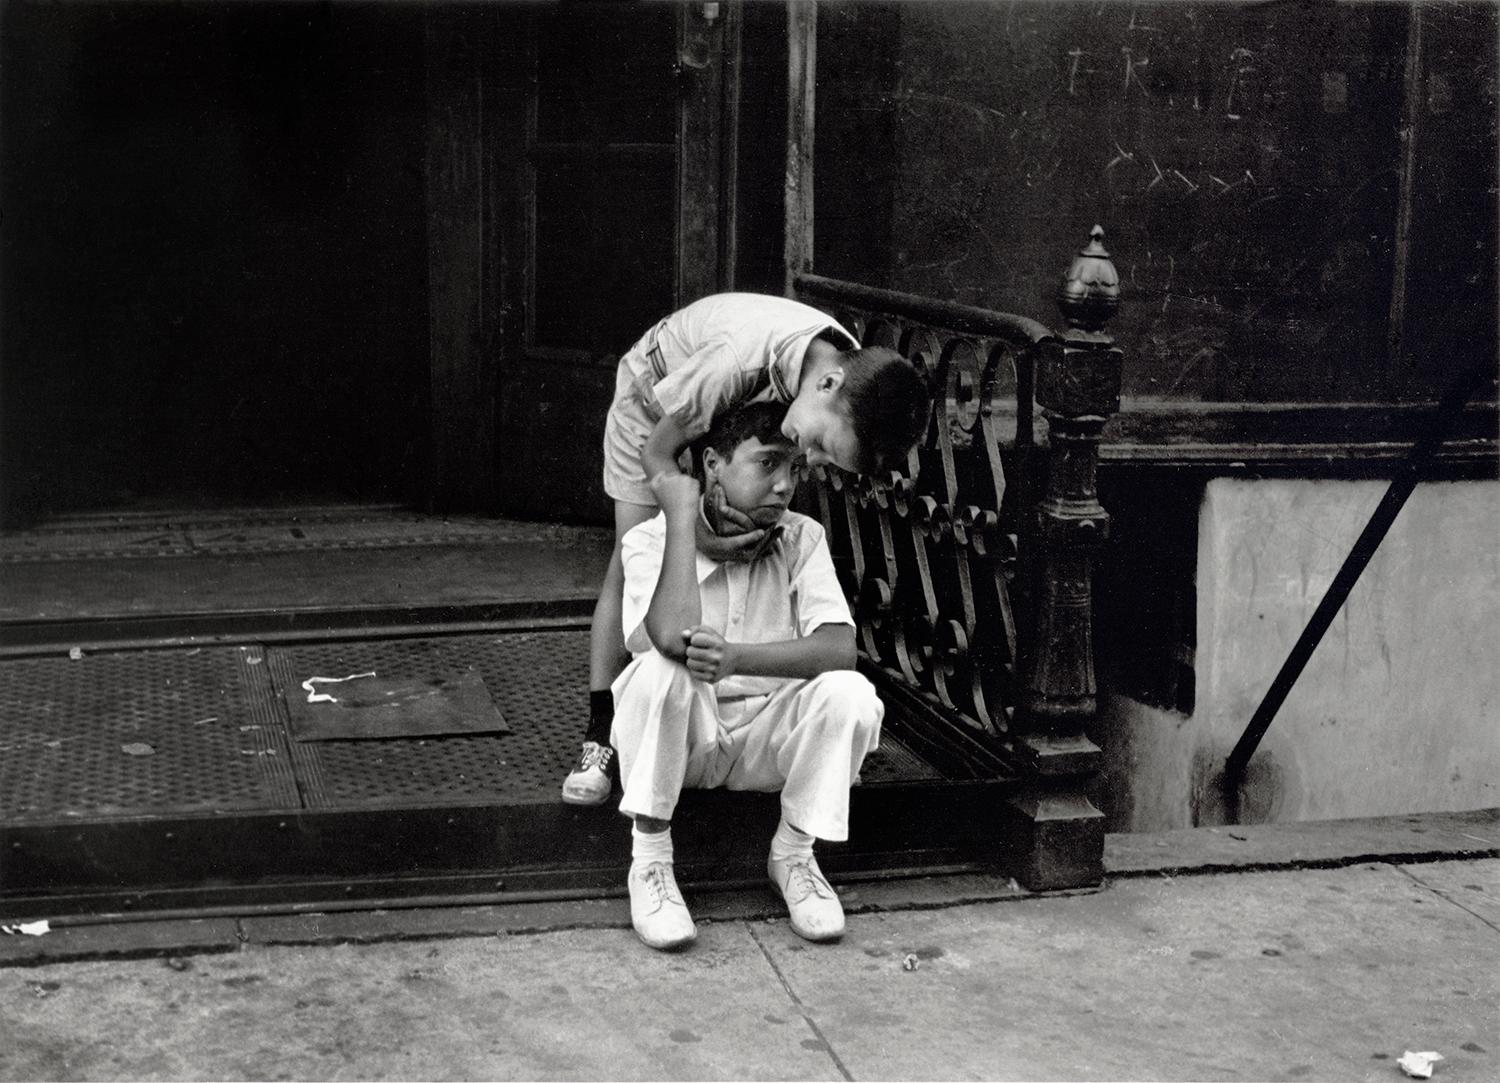 Helen Levitt Portrait Photograph - New York (one boy consoling another)